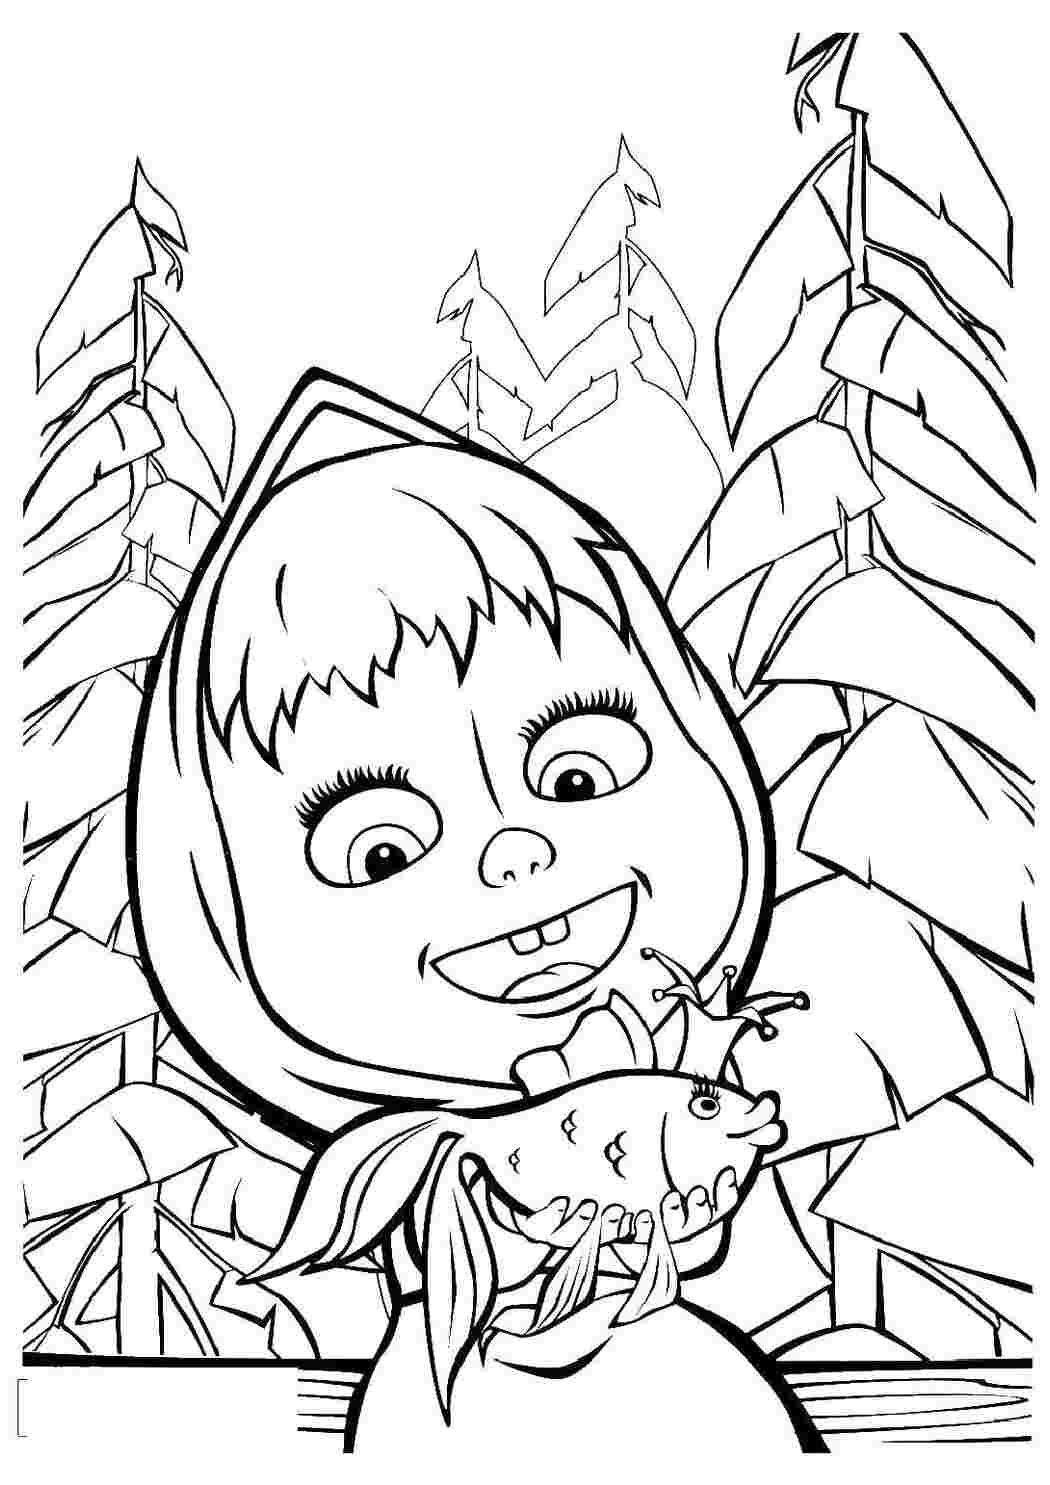 Раскраски Раскраски для детей про озорную Машу из мультфильма Маша и медведь  Маша держит золотую рыбку